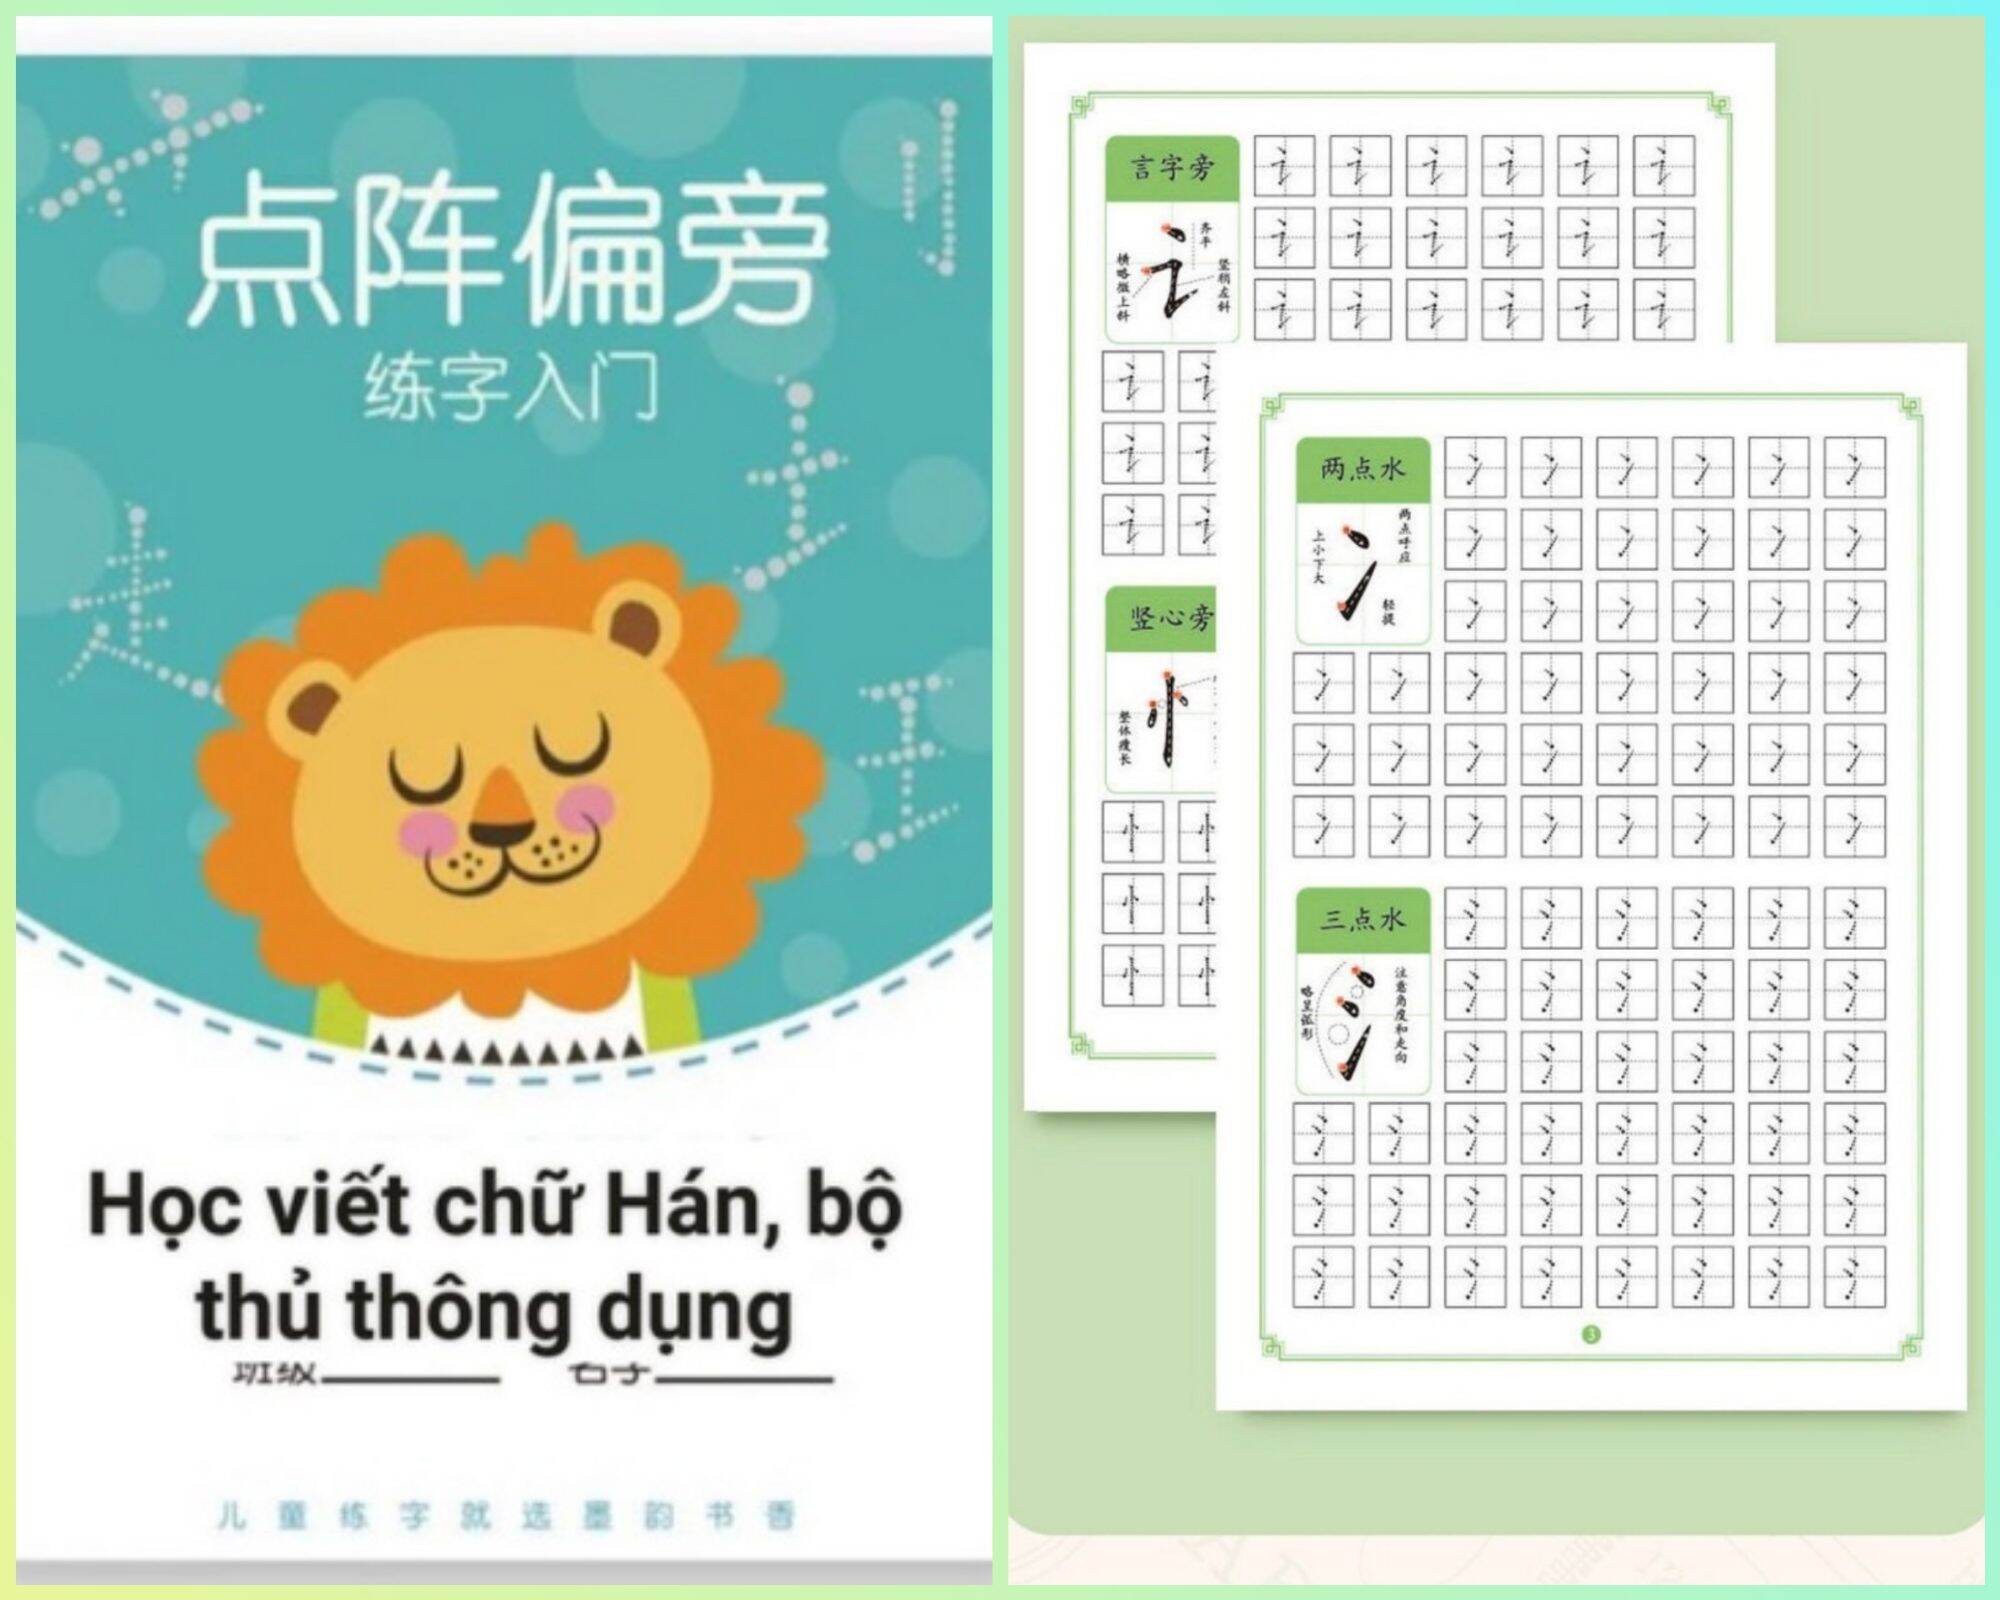 Vở luyện viết tiếng Trung học viết chữ Hán cơ bản dành cho người mới học